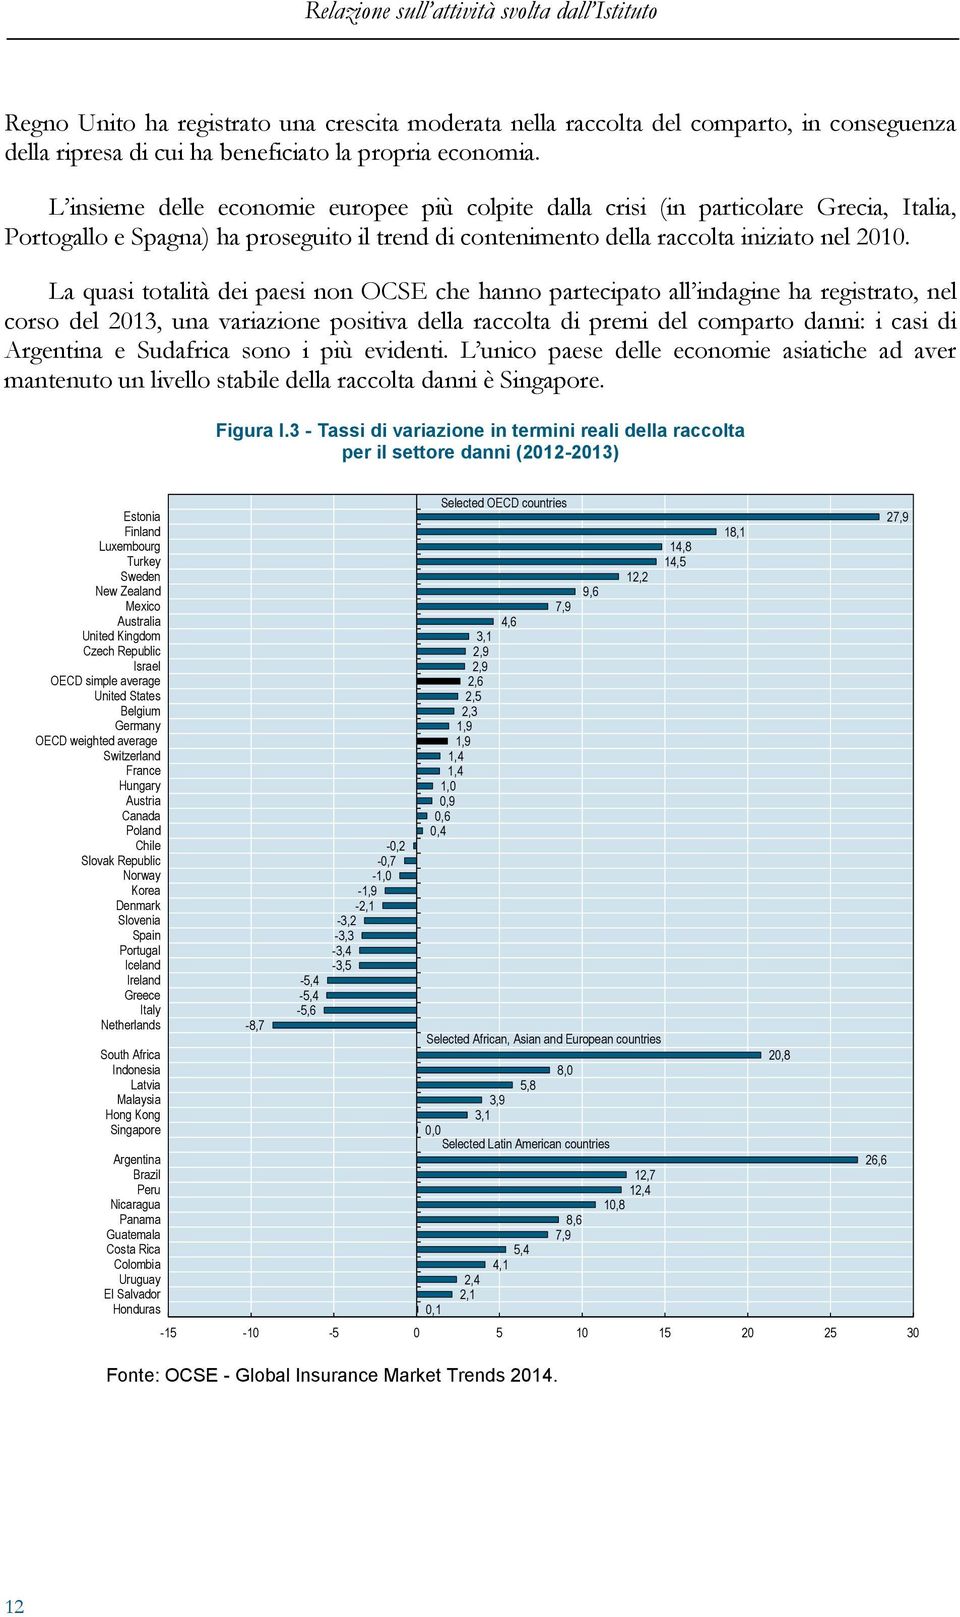 La quasi totalità dei paesi non OCSE che hanno partecipato all indagine ha registrato, nel corso del 2013, una variazione positiva della raccolta di premi del comparto danni: i casi di Argentina e